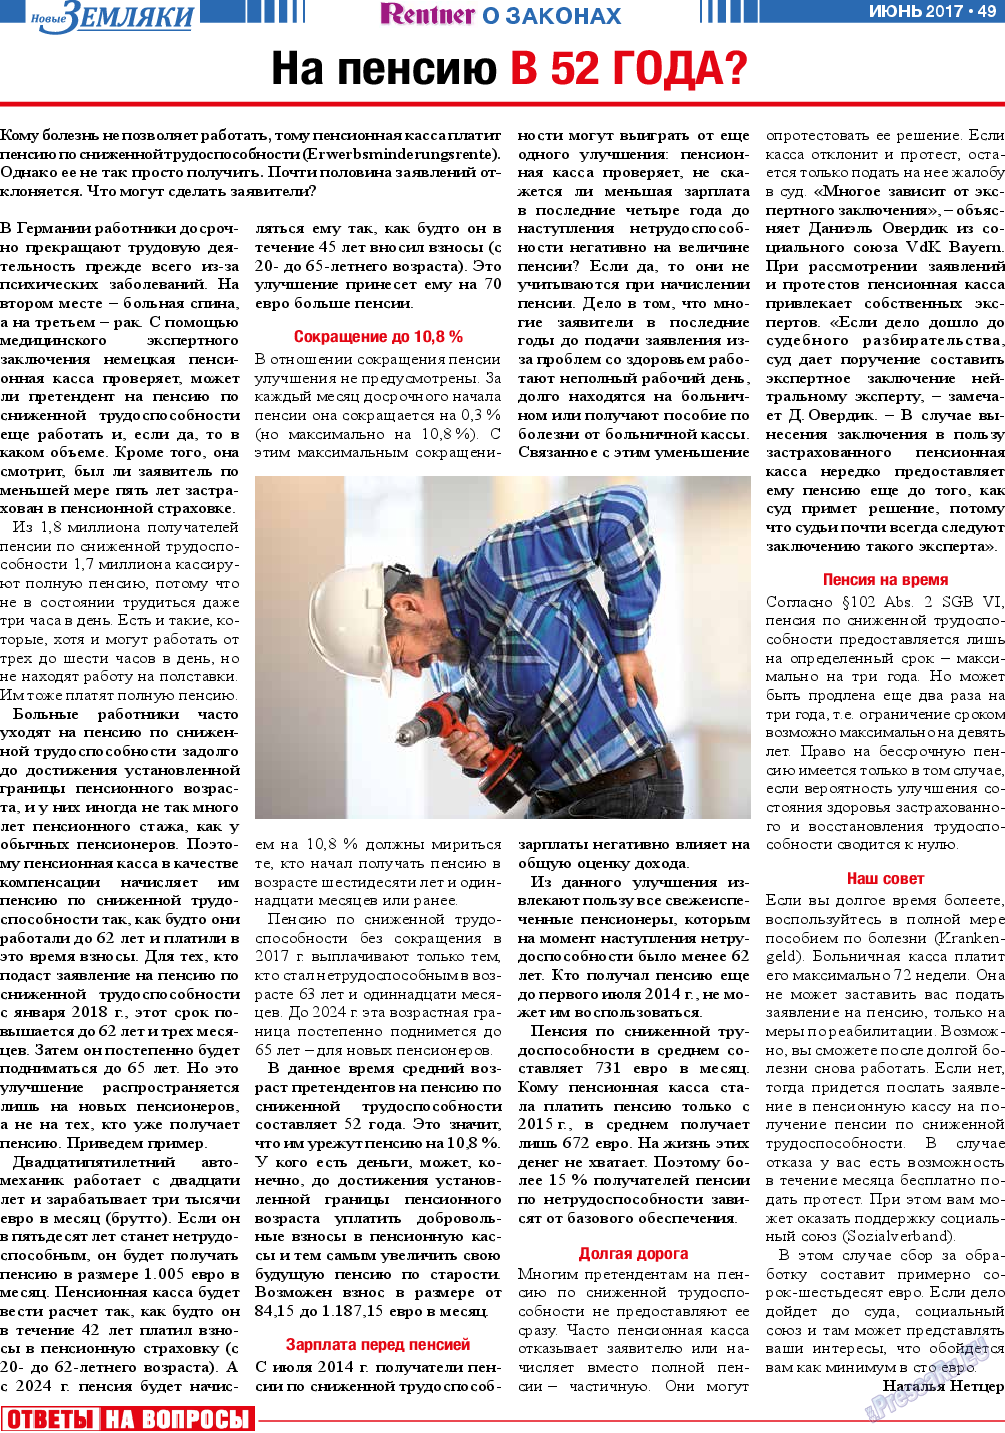 Новые Земляки, газета. 2017 №6 стр.49